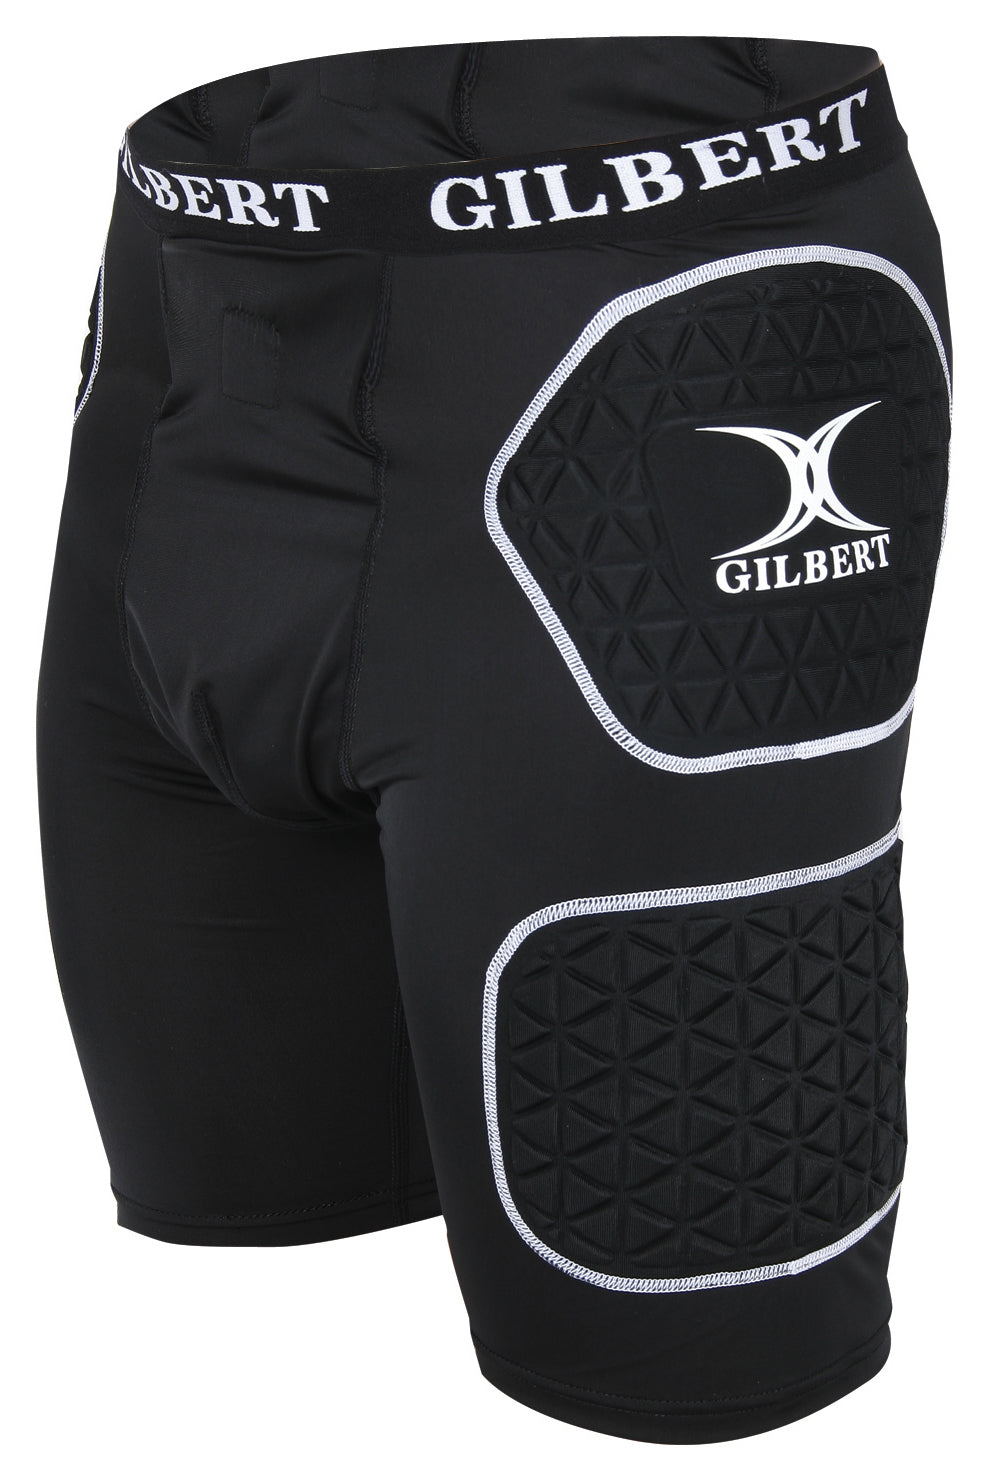 Gilbert Protective Shorts